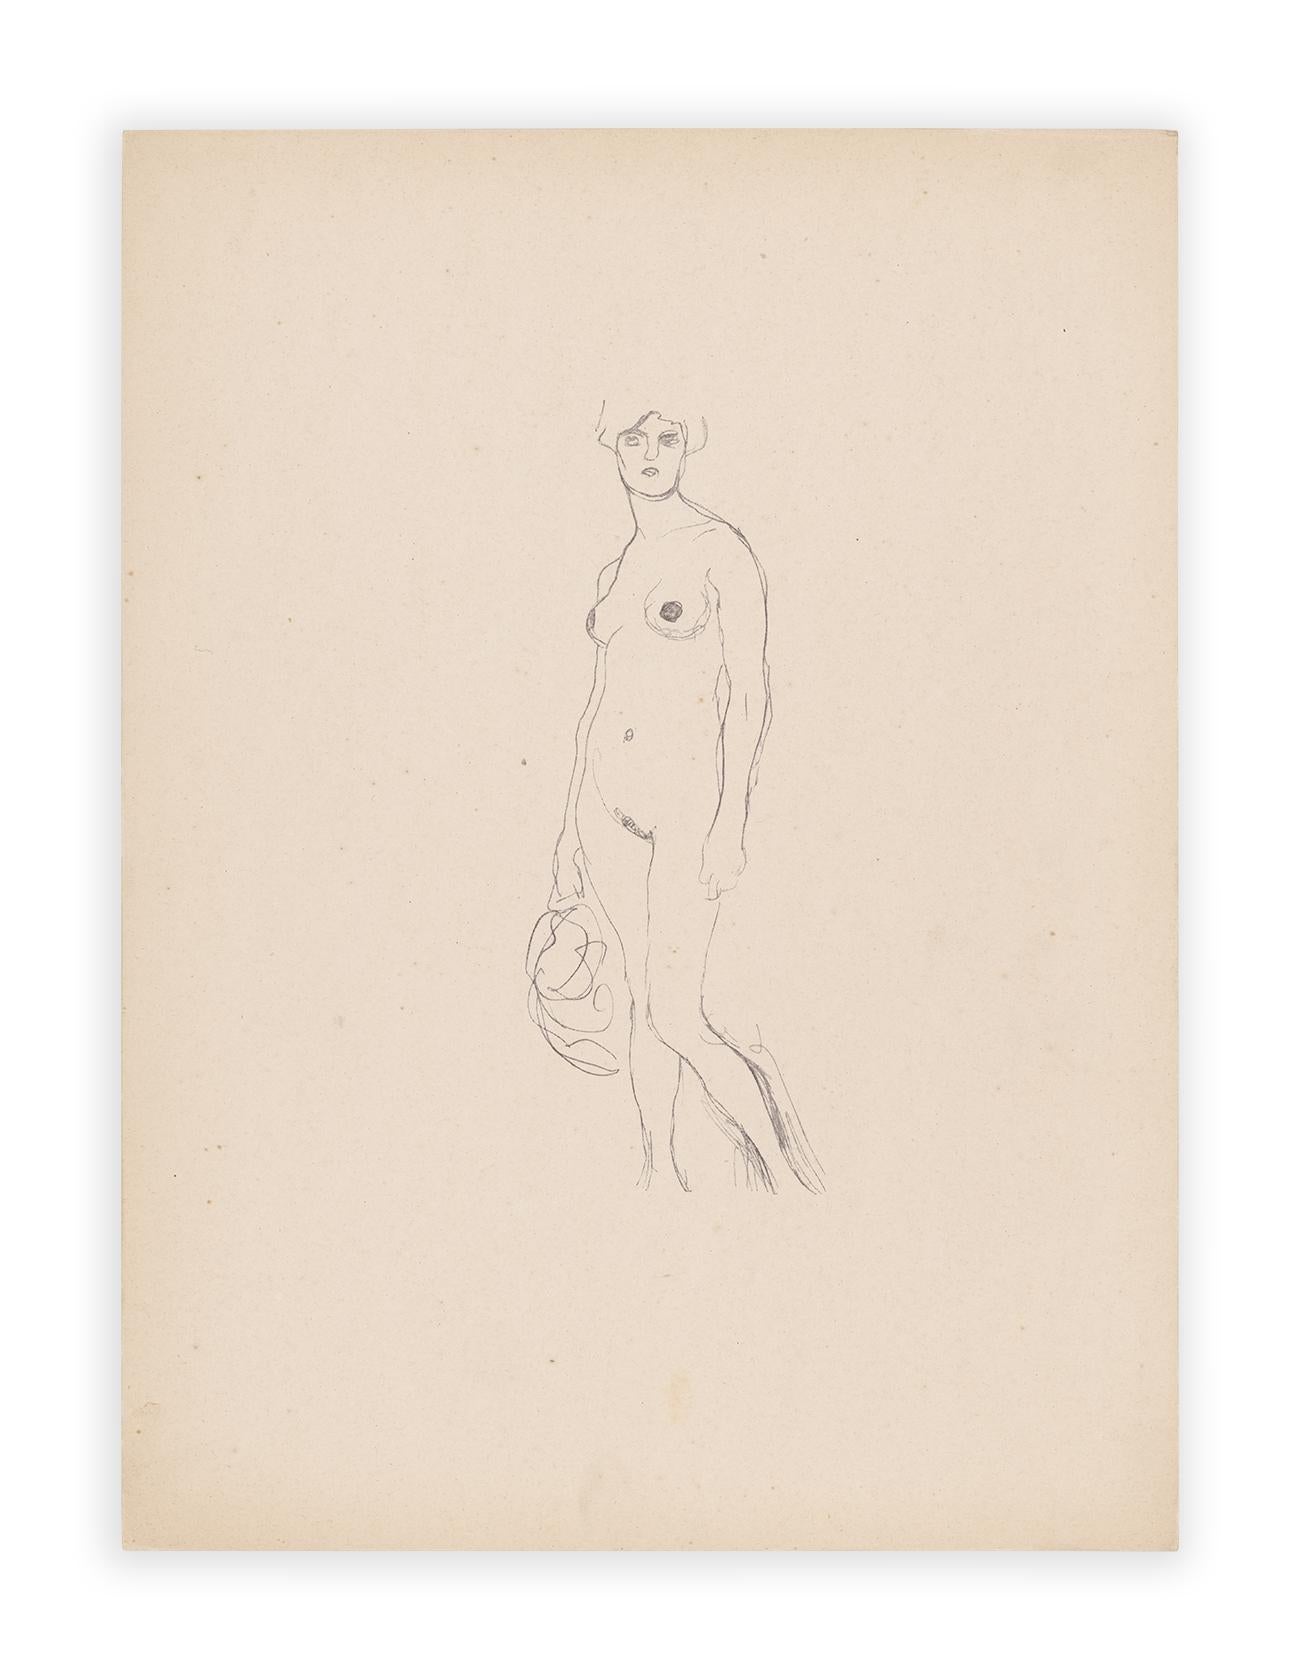 Gustav Klimt, stehender Akt, Handzeichnungen (Sketch), Thyrsos Verlag, 1922 (Wiener Secession), Print, von (after) Gustav Klimt